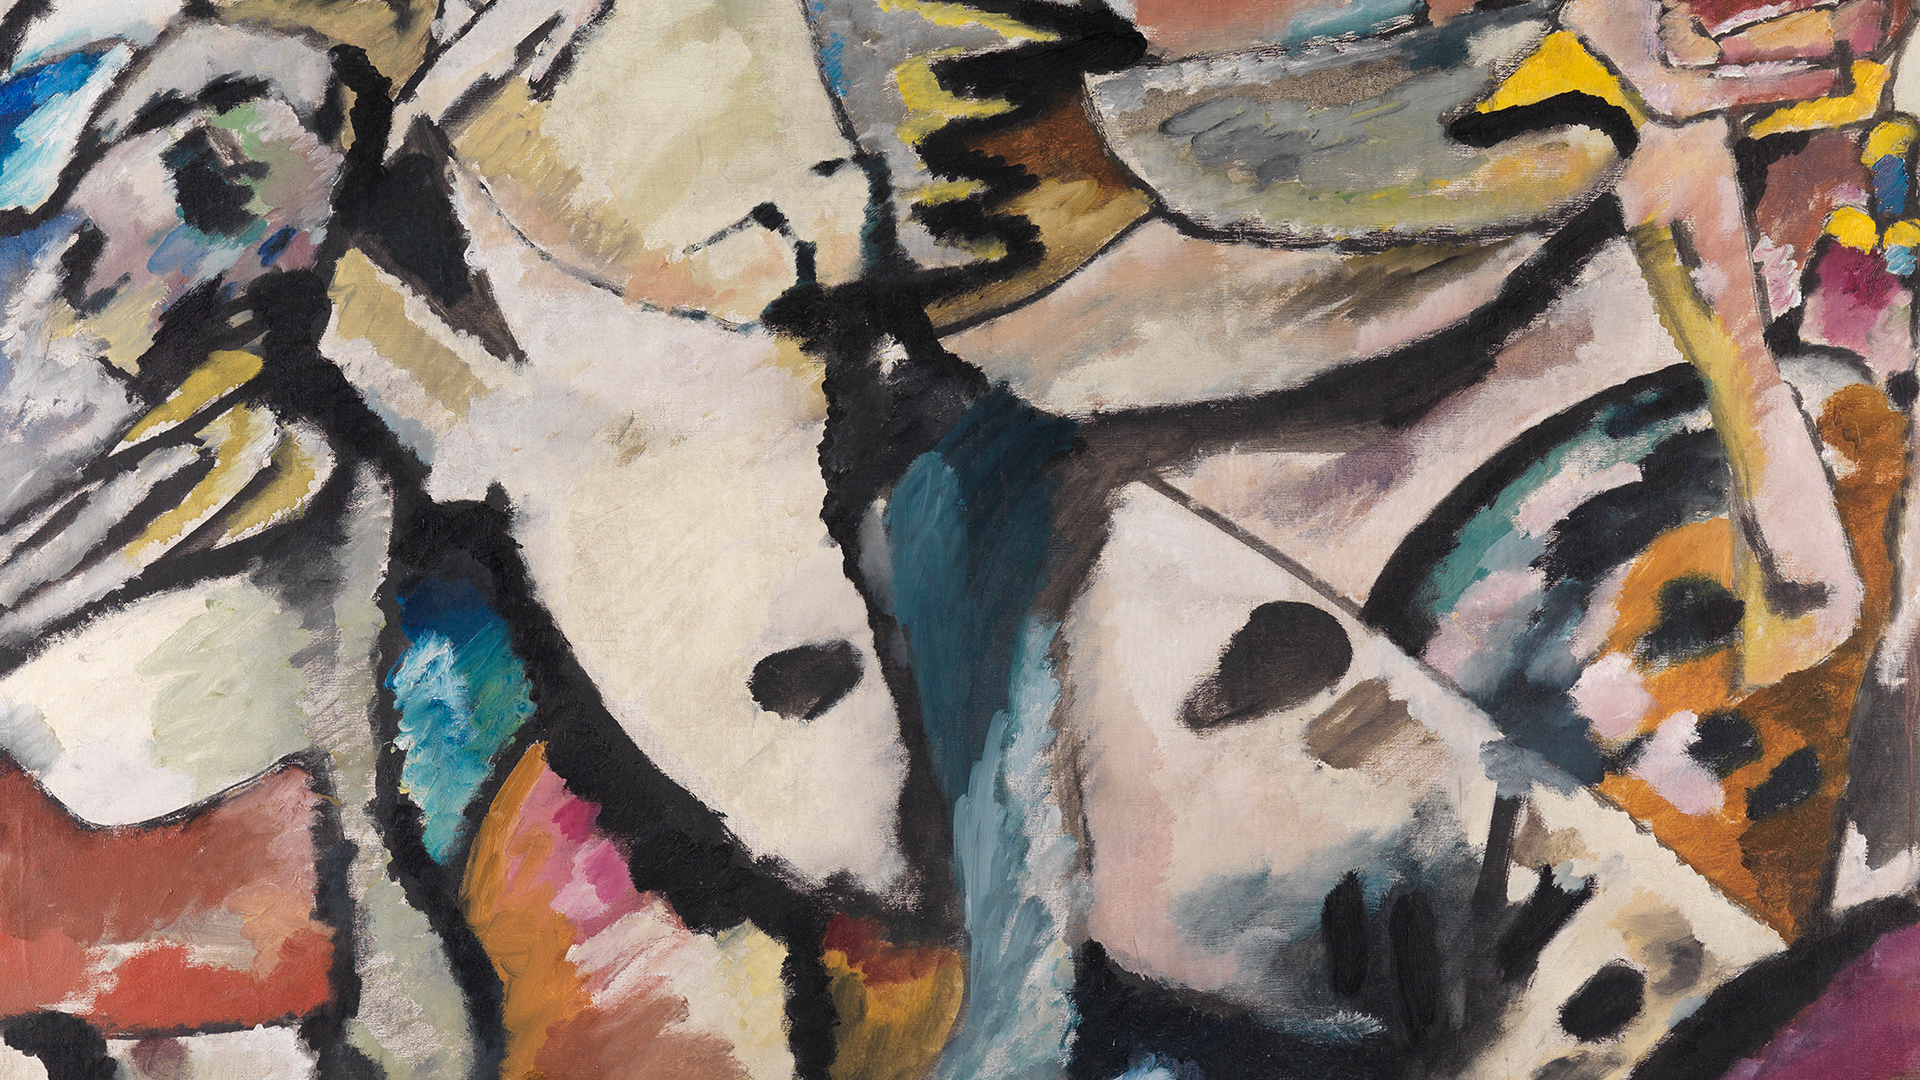 Ausschnitt von Kandinskys Improvisation 13. Das Bild zeigt abstrakte Farbflächen.